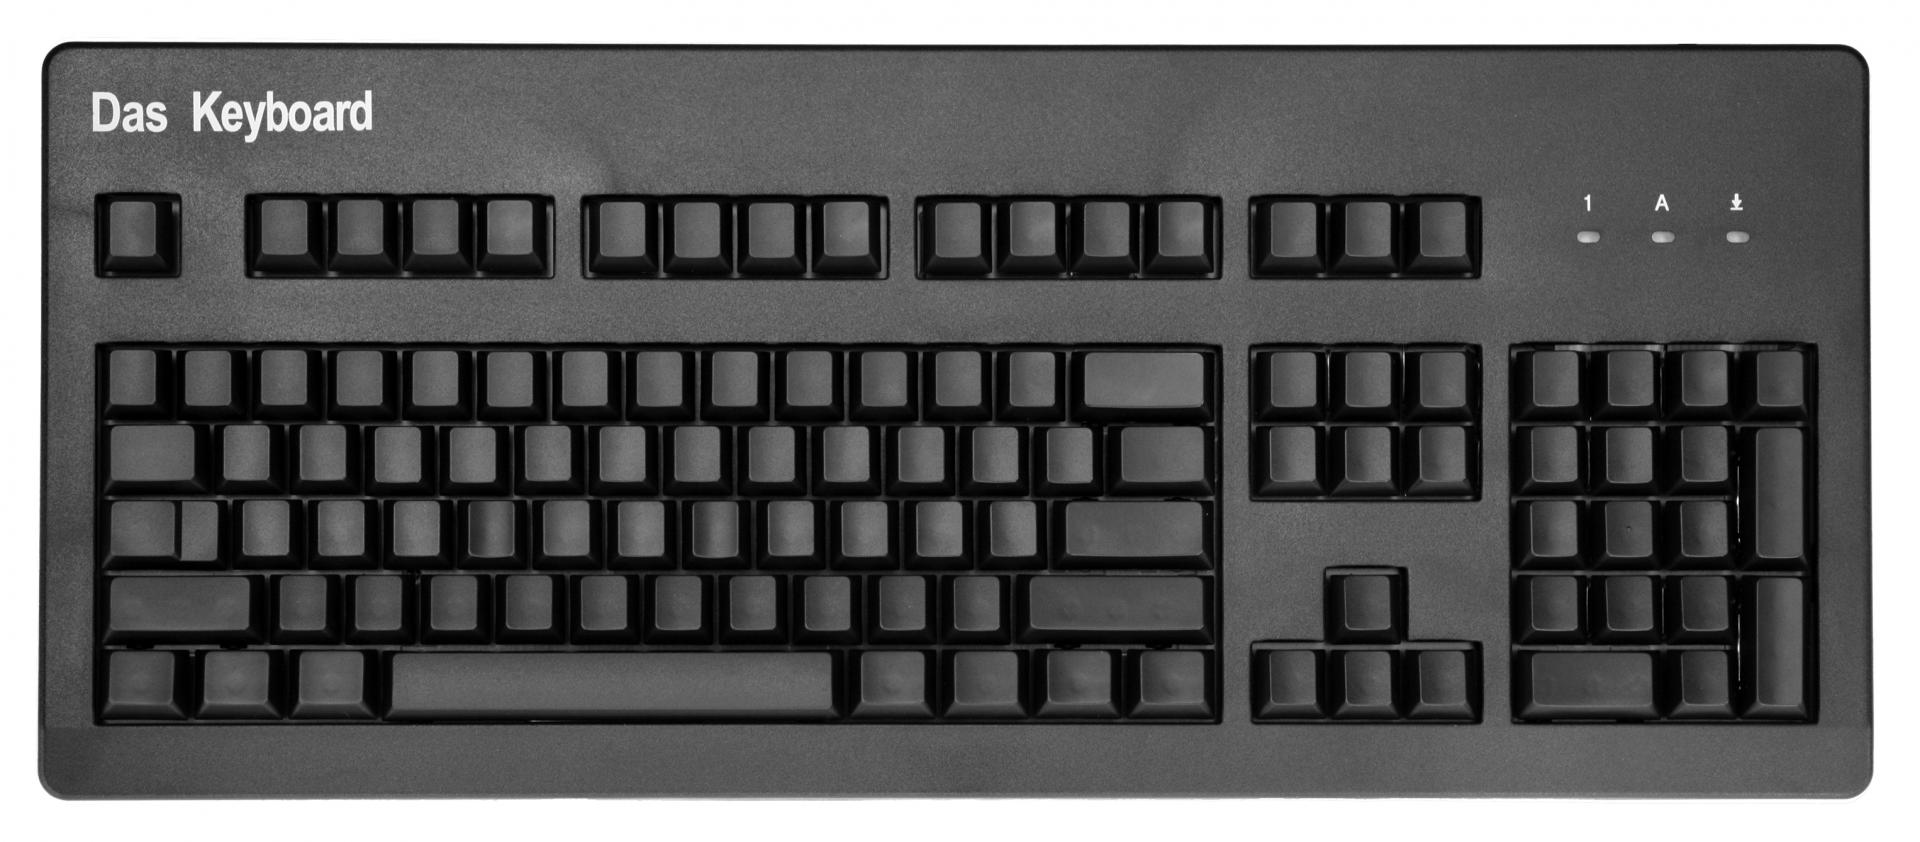 نام: das keyboard.jpg نمایش: 61 اندازه: 164.7 کیلو بایت